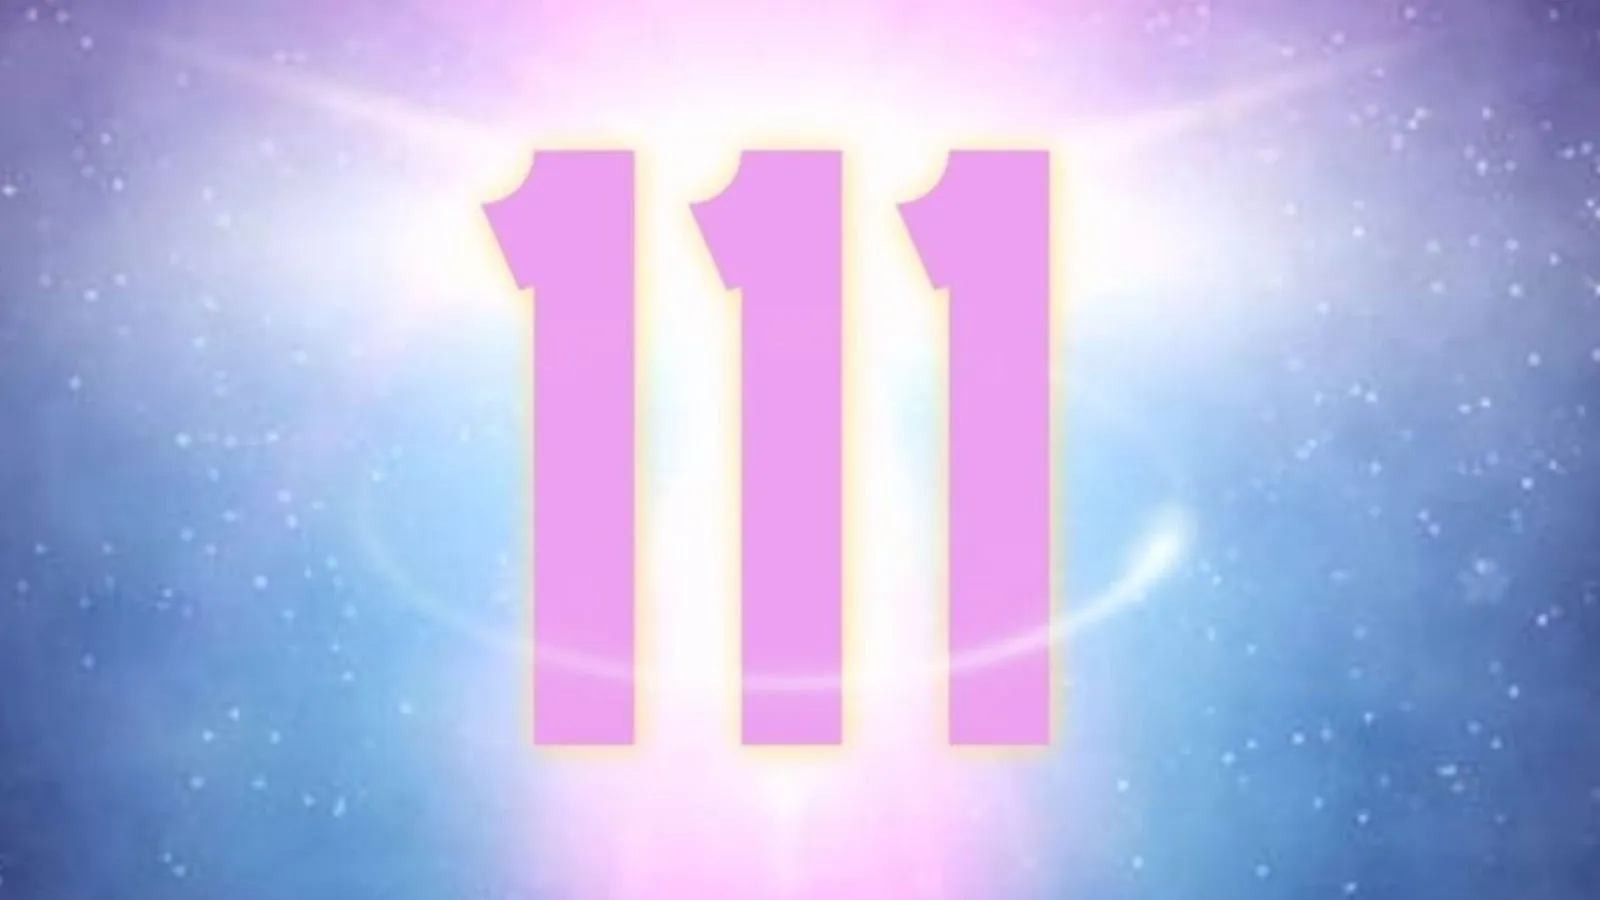 Numero degli Angeli 111.